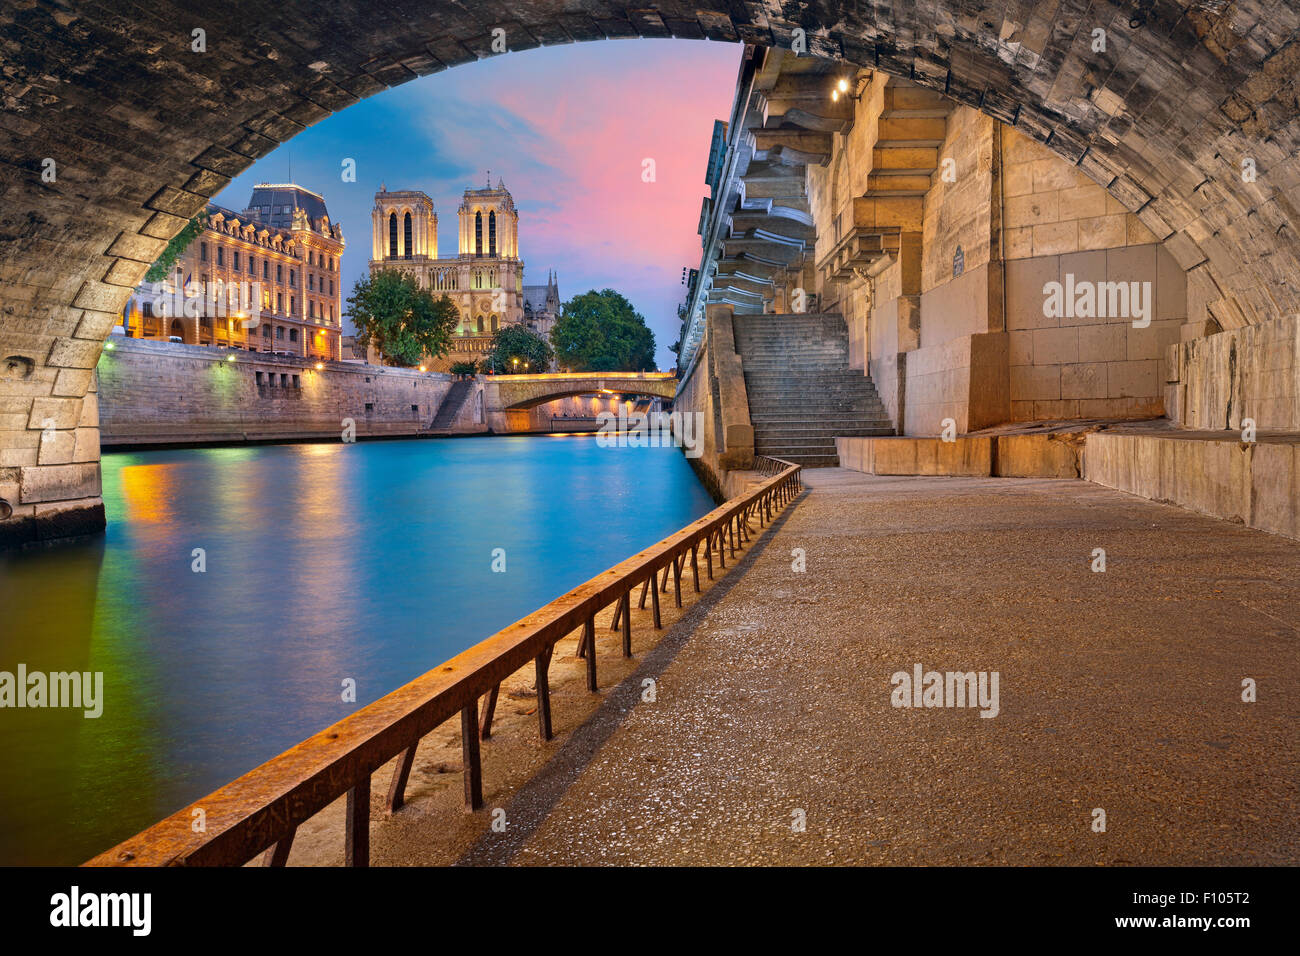 Parigi. Immagine della cattedrale di Notre Dame de Paris Cathedral e la riva del fiume Senna a Parigi, Francia. Foto Stock